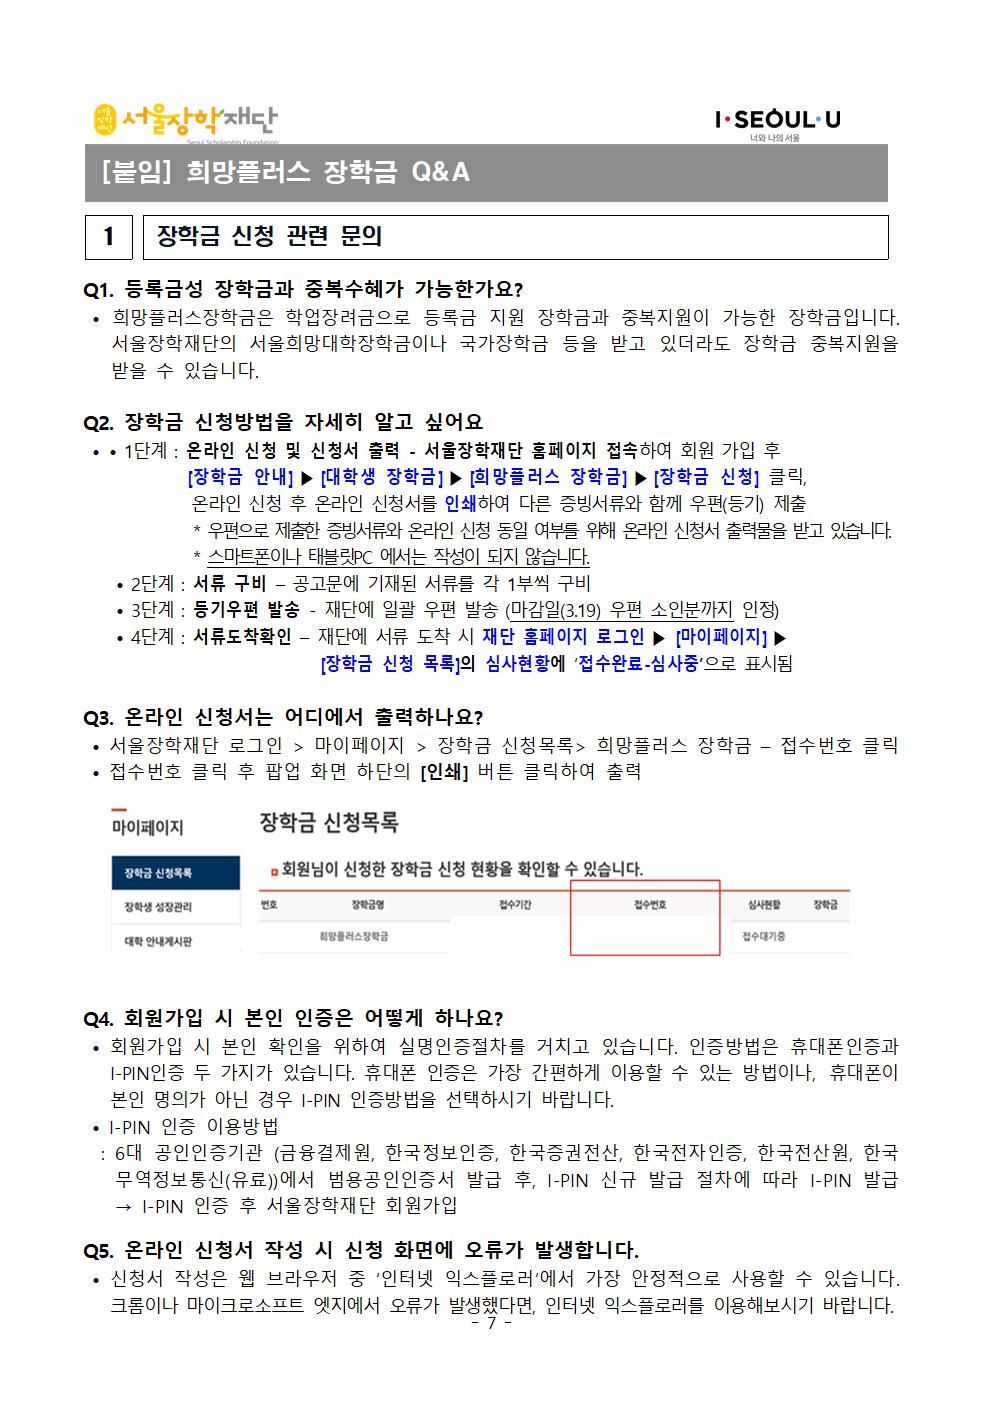 2021-1 서울장학재단 희망플러스장학금 장학생 선발공고